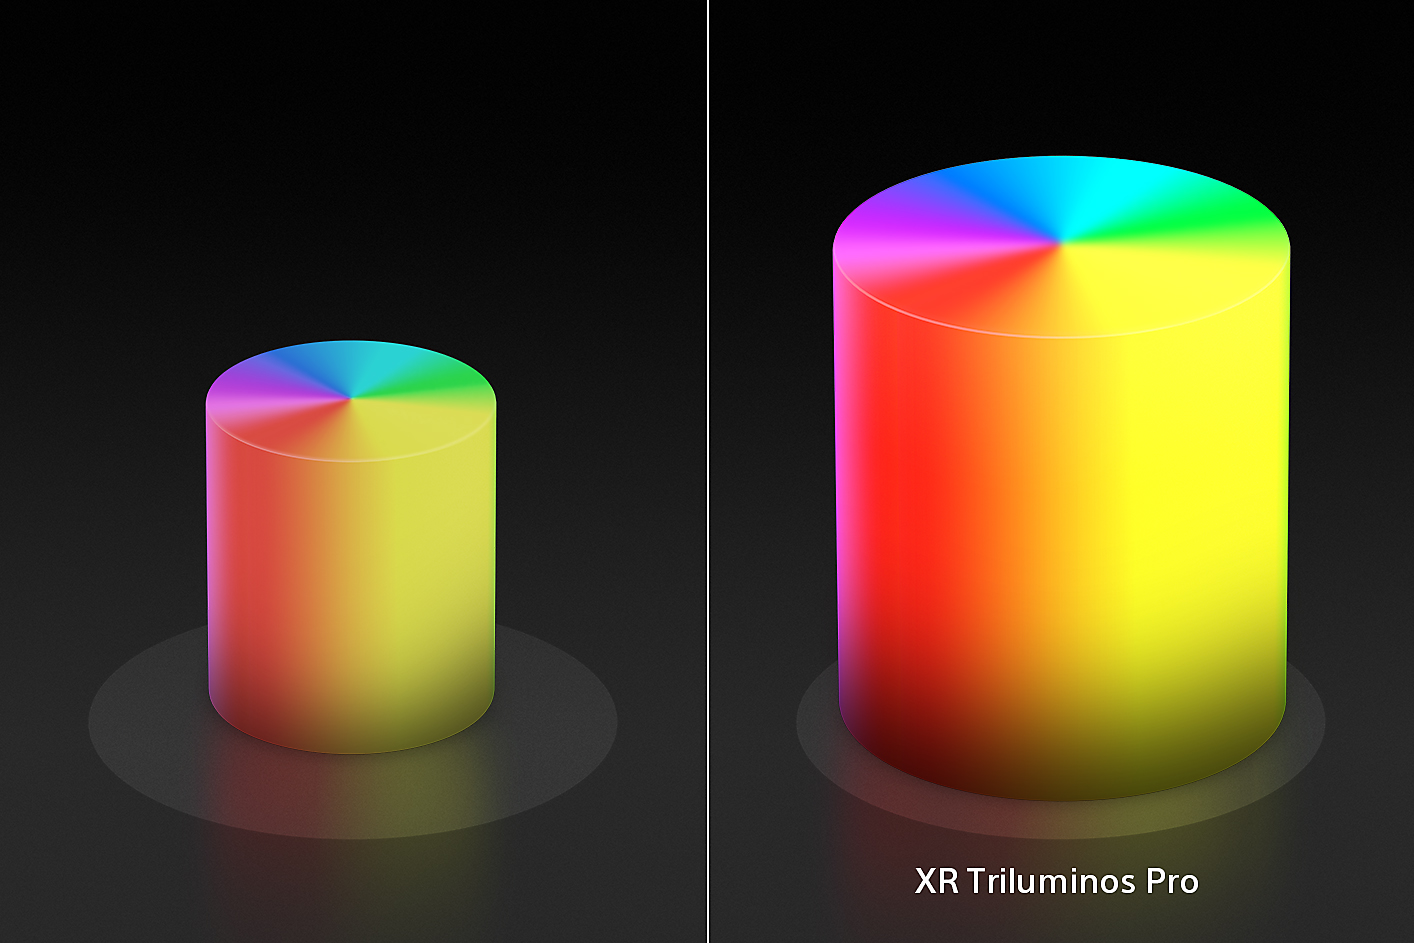 Podijeljeni zaslon prikazuje dva stošca boje u obliku svijeća, manji s lijeve, odnosno veći s desne strane, s naprednim bojama i teksturama tehnologije XR Triluminos Pro